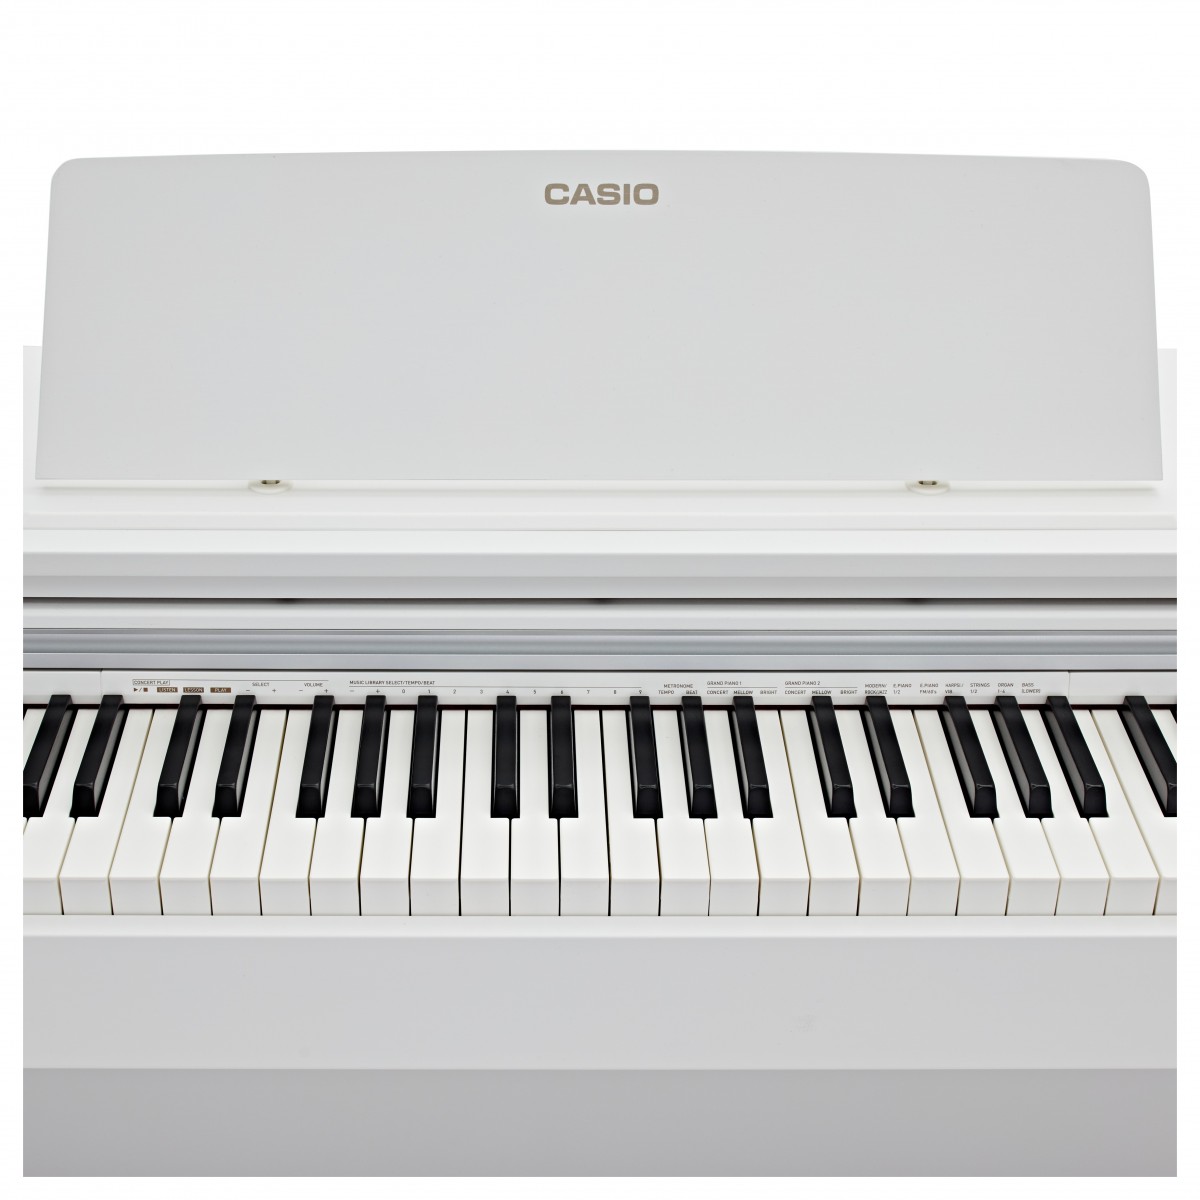 CASIO CELVIANO AP270 WE WHITE PIANOFORTE DIGITALE 88 TASTI COLORE BIANCO 4